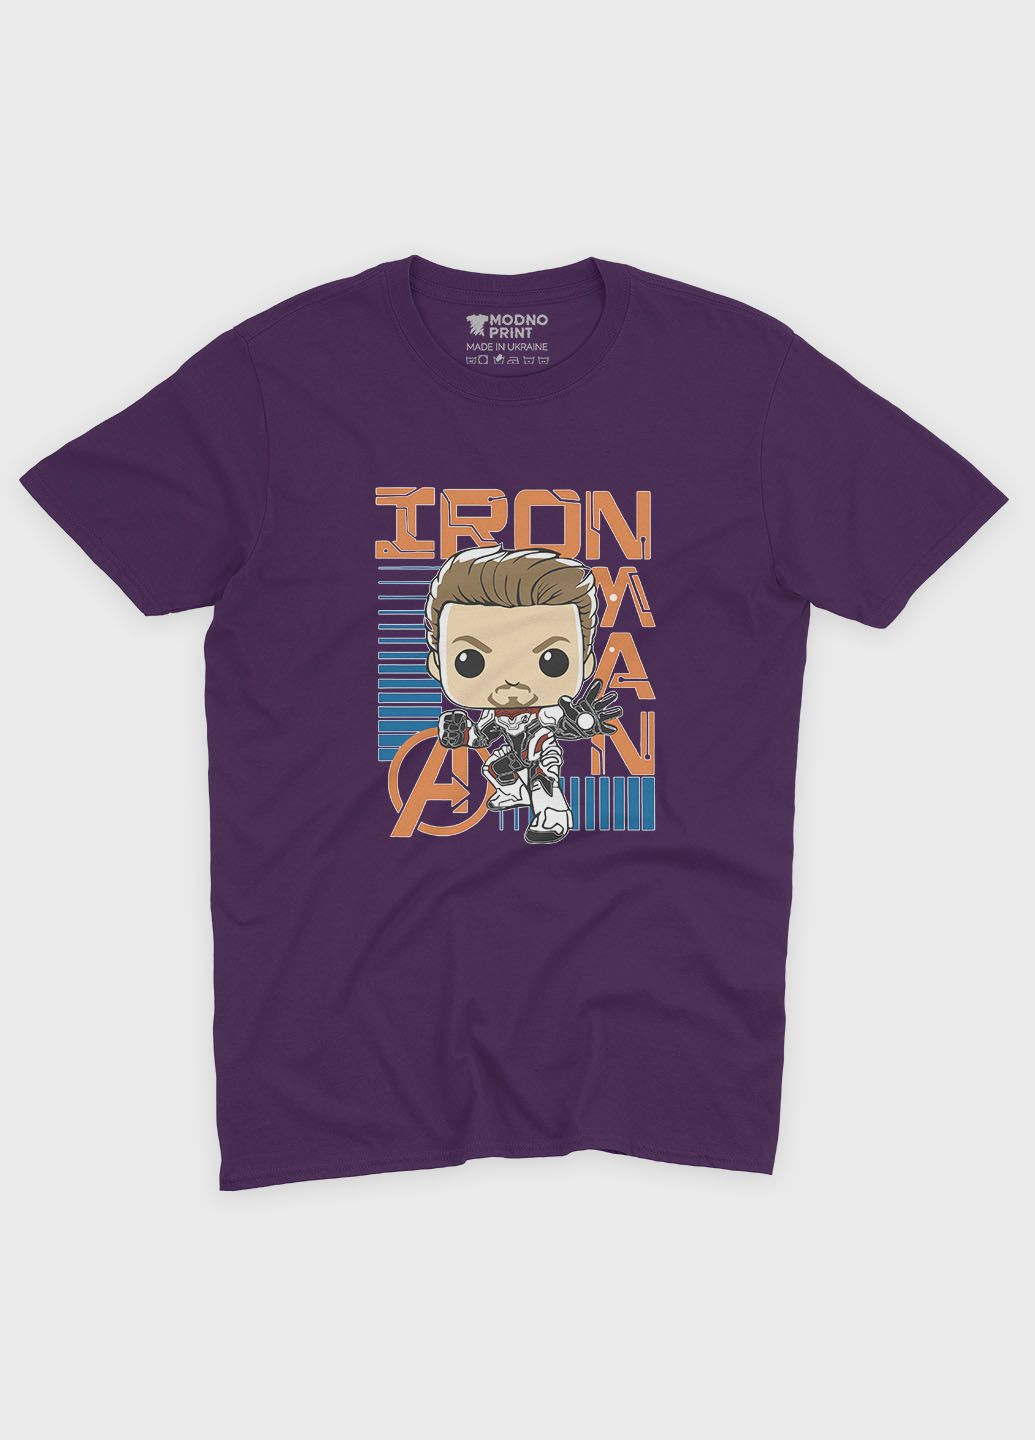 Фиолетовая демисезонная футболка для девочки с принтом супергероя - железный человек (ts001-1-dby-006-016-022-g) Modno